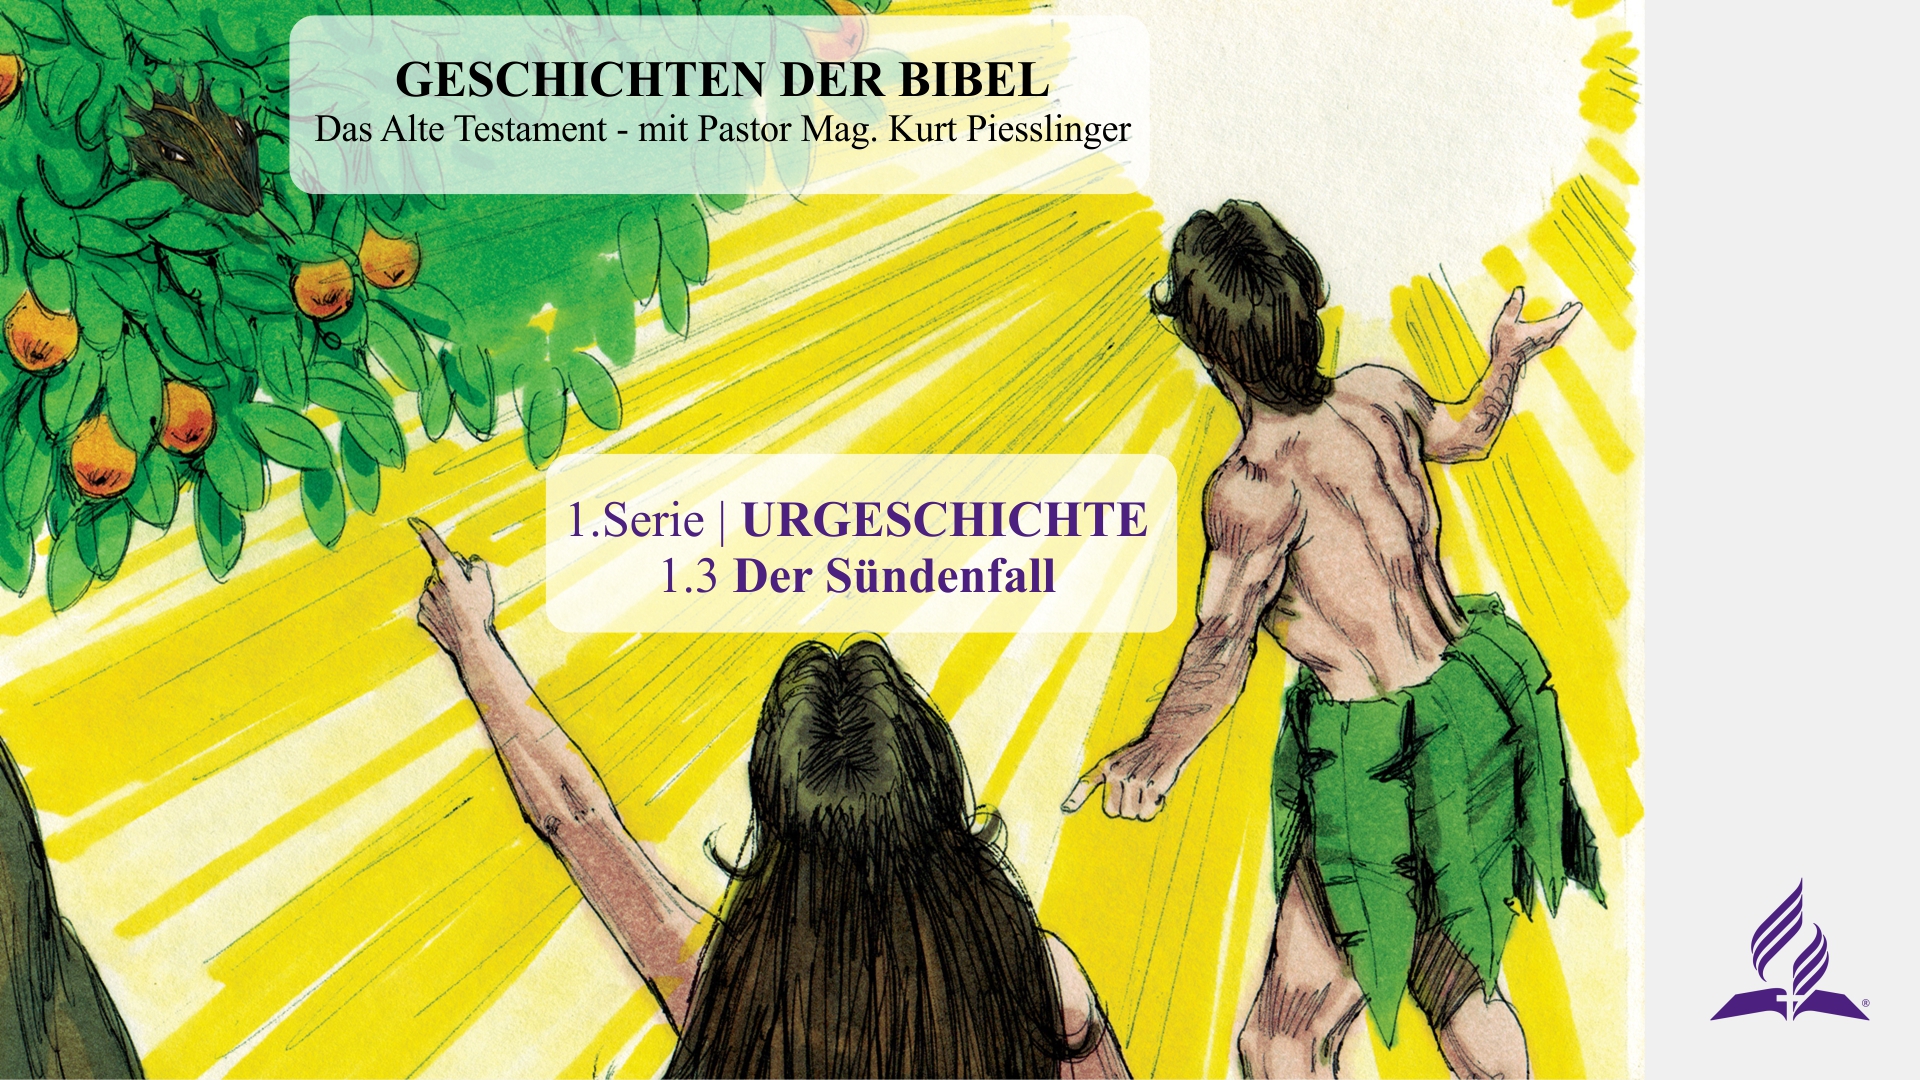 1.3 Der Sündenfall – URGESCHICHTE | Pastor Mag. Kurt Piesslinger